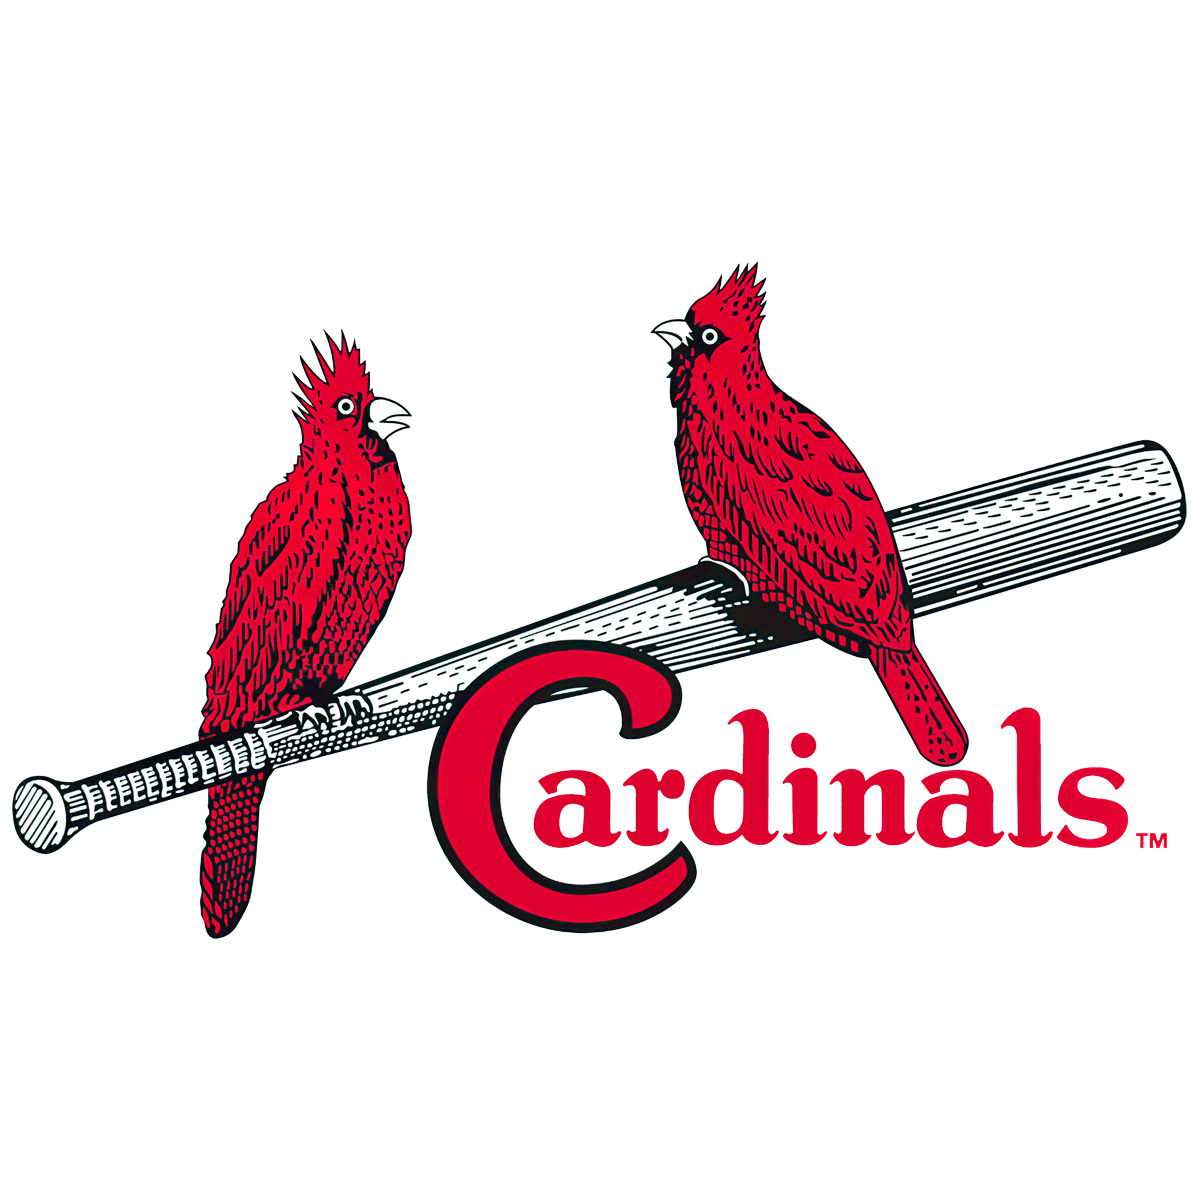 St. Louis Cardinals Logo 1927-1947